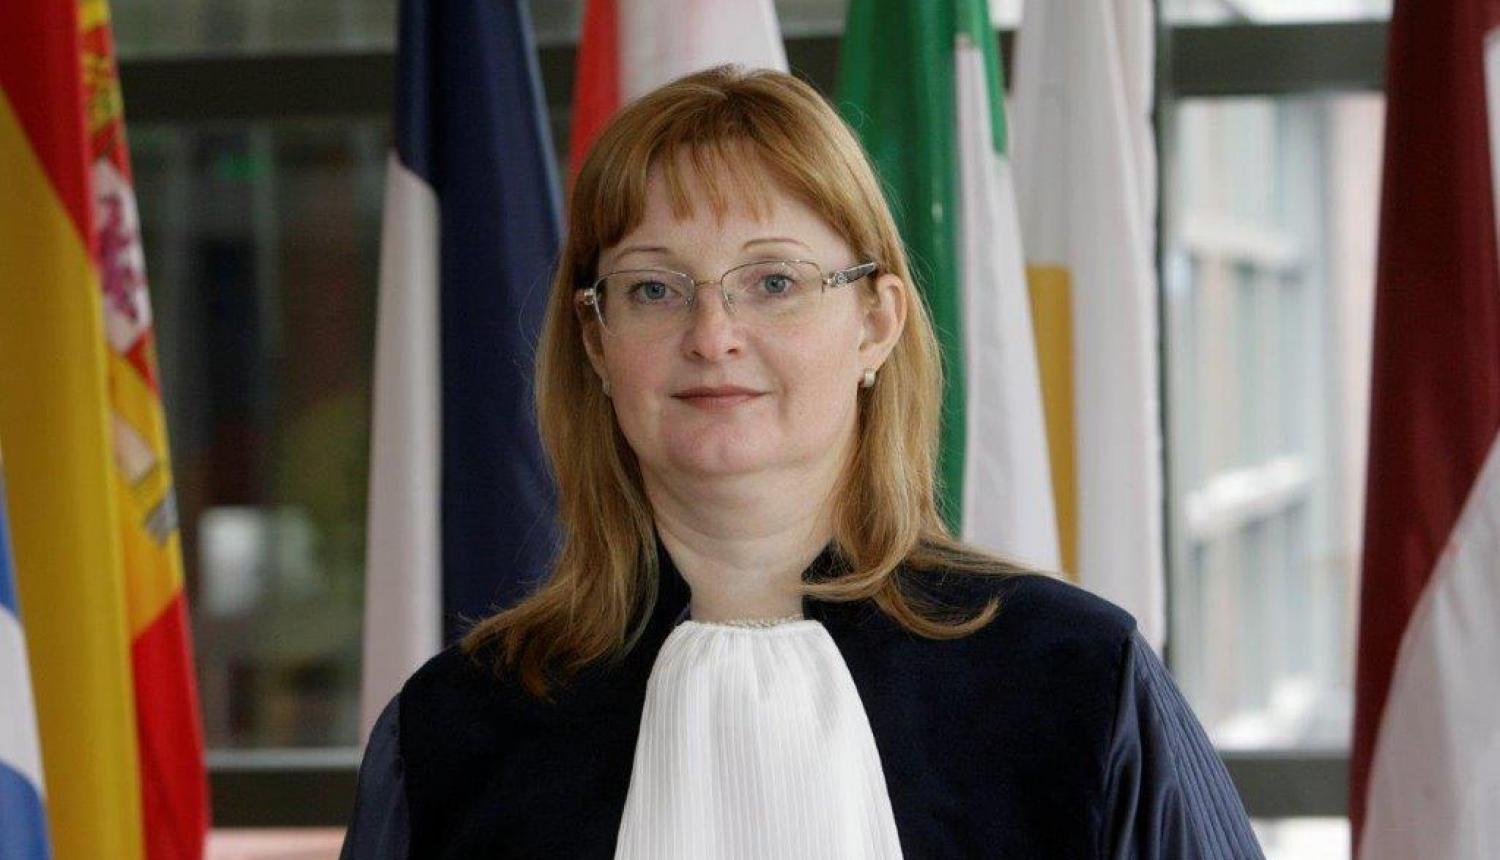 Augstajā ES Vispārējās tiesas tiesneša amatā uz vēl vienu termiņu iecelta Inga Reine